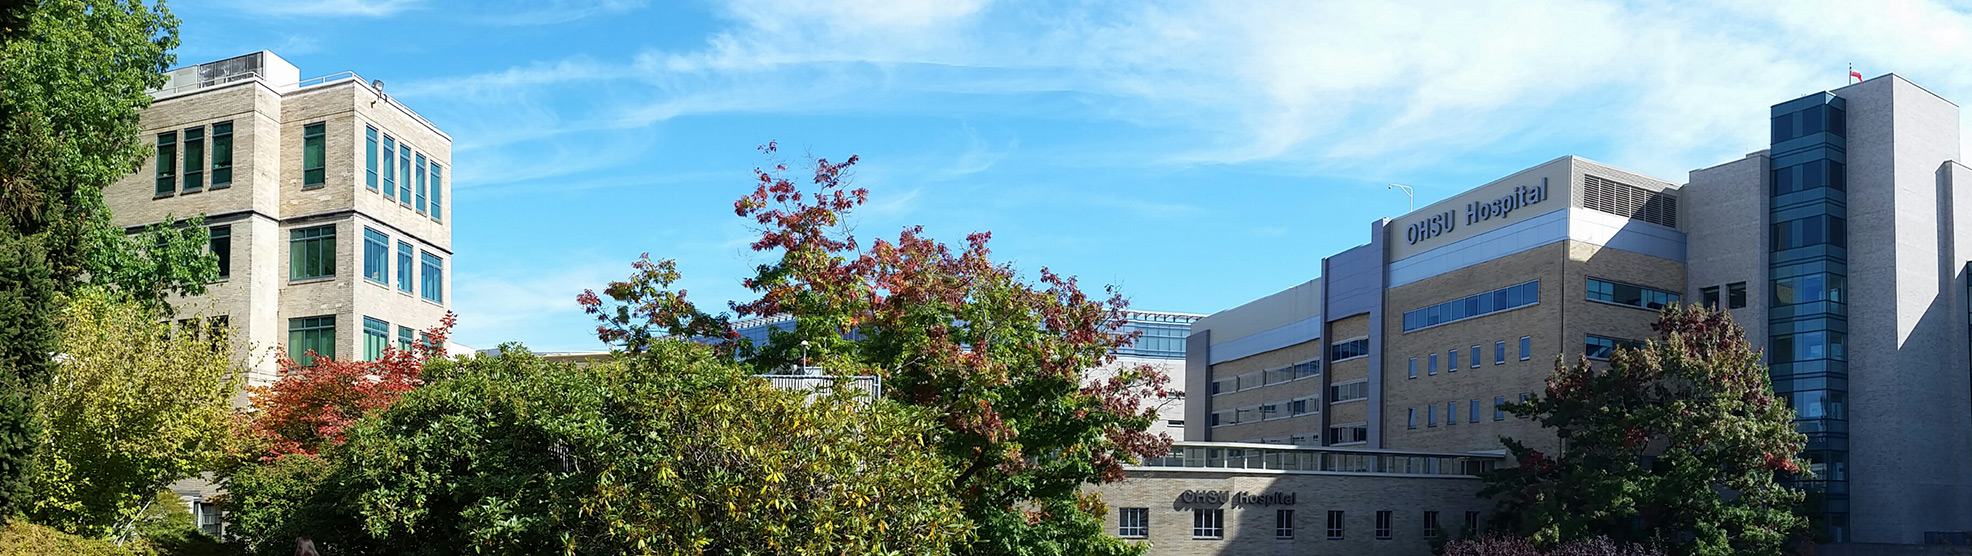 OHSU campus including OHSU Hospital